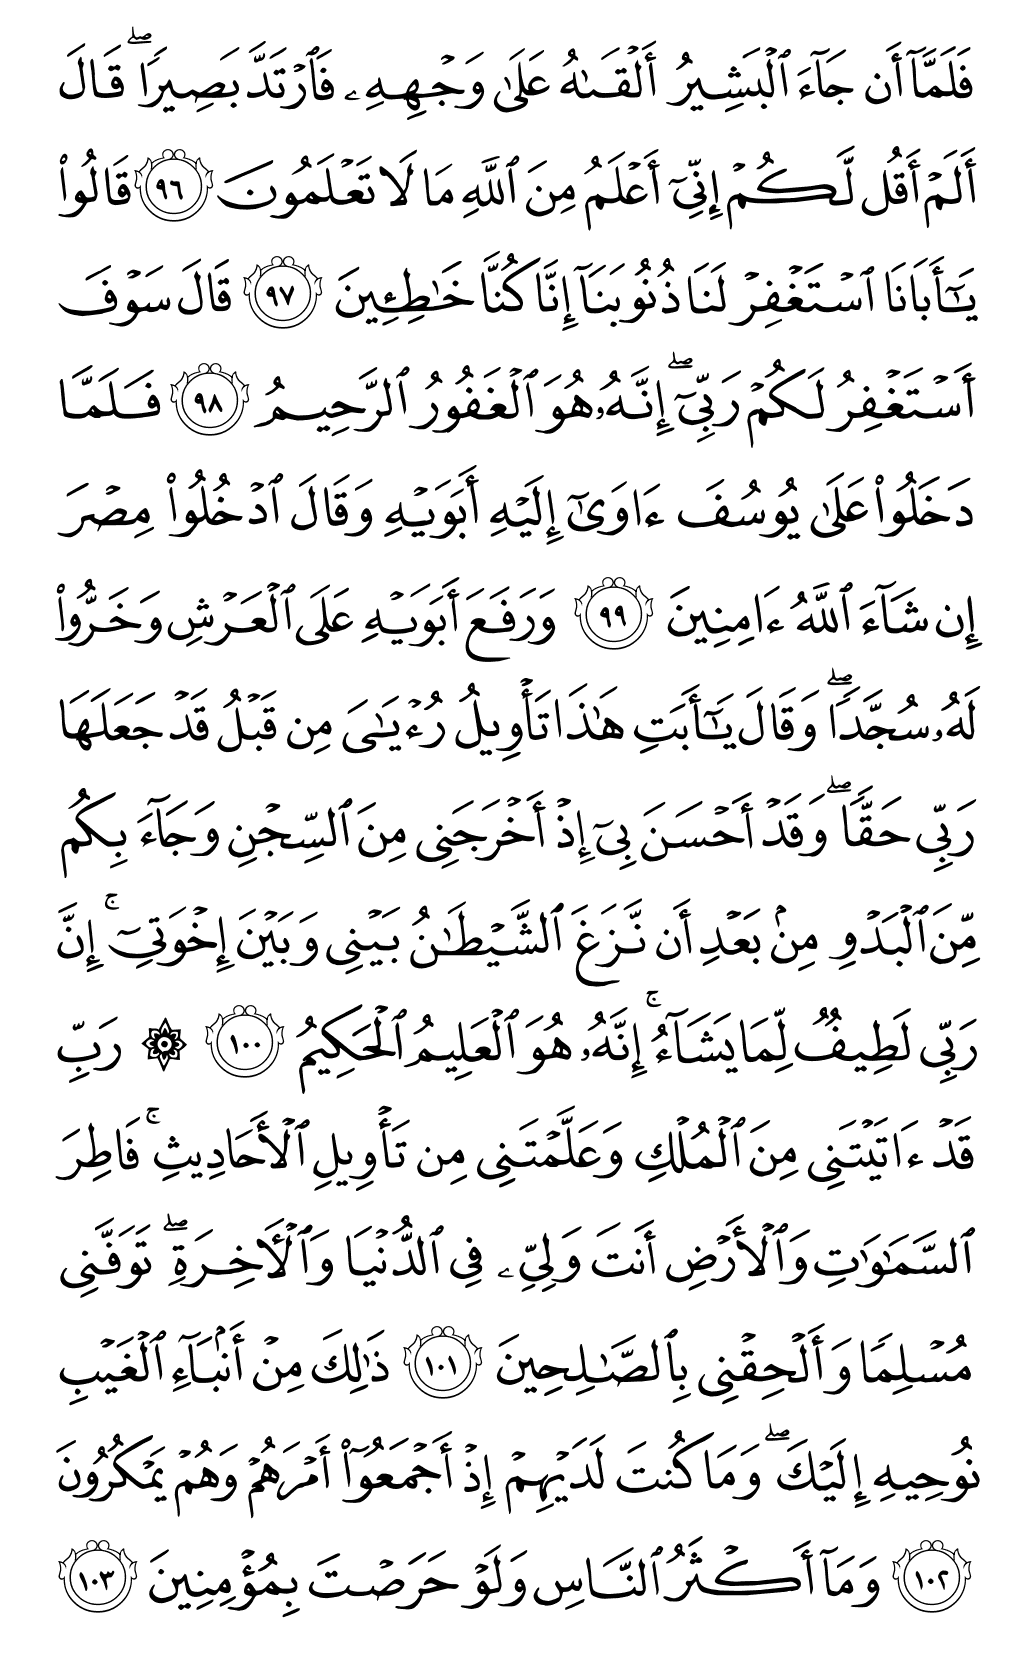 الصفحة رقم 247 من القرآن الكريم